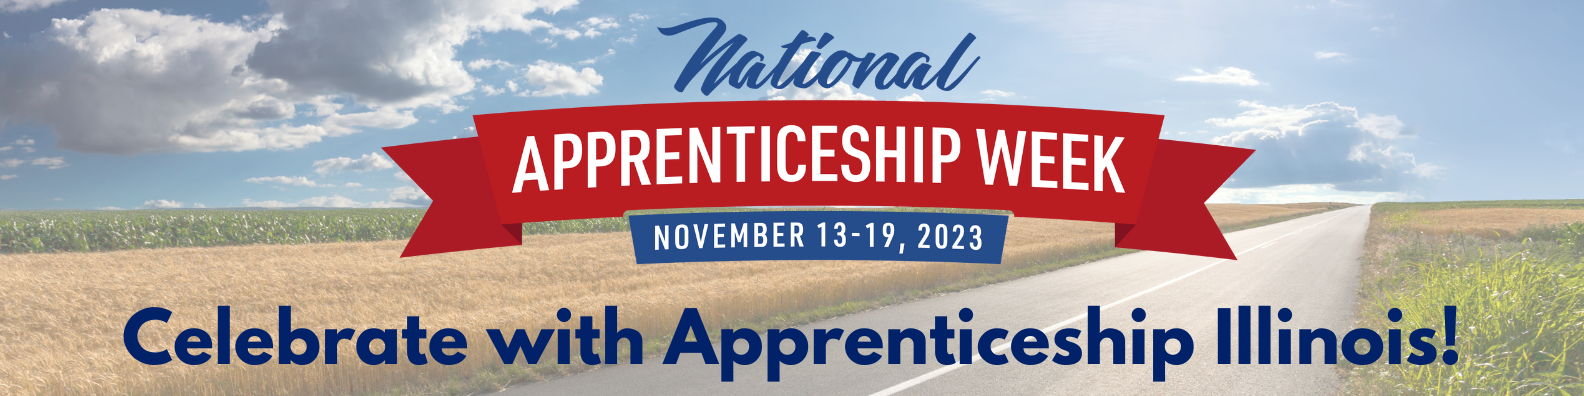 National Apprenticeship Week 2023 Apprenticeship Illinois